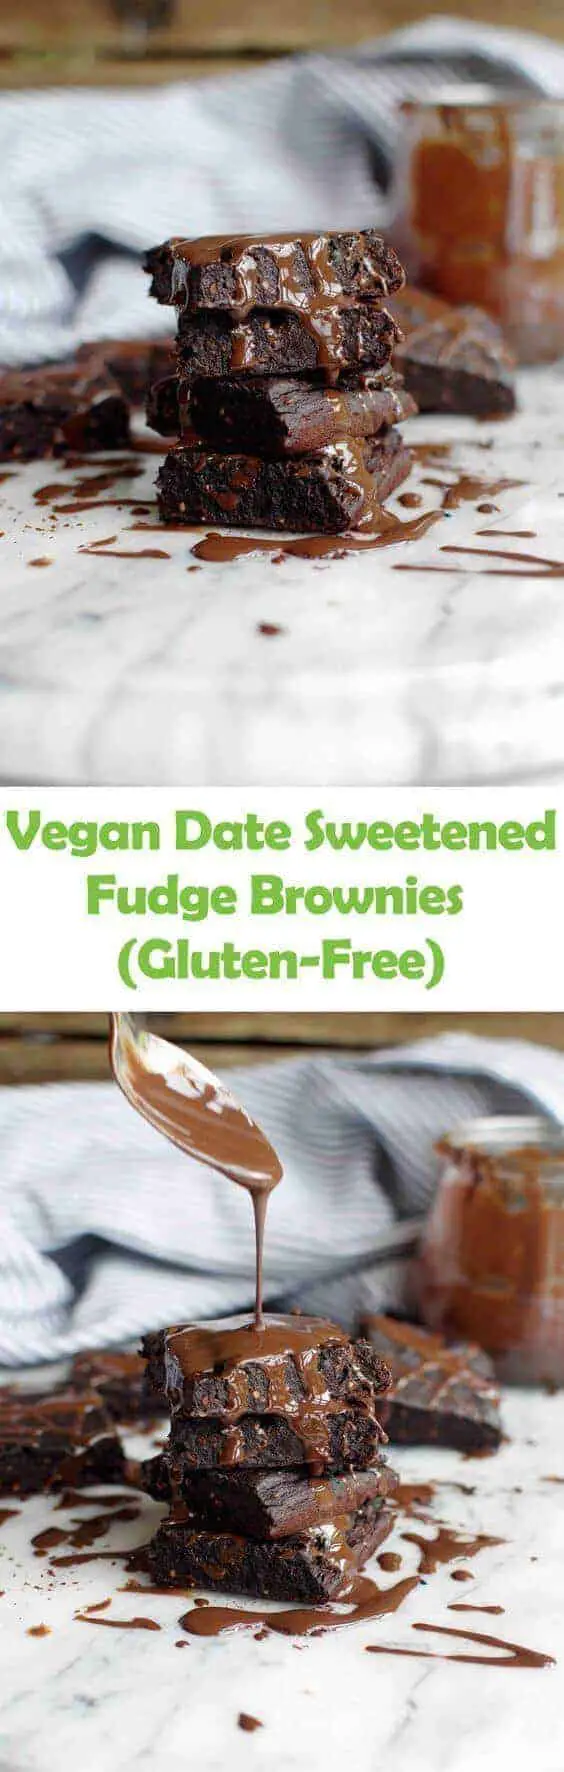 Vegan Date Sweetened Fudge Brownies